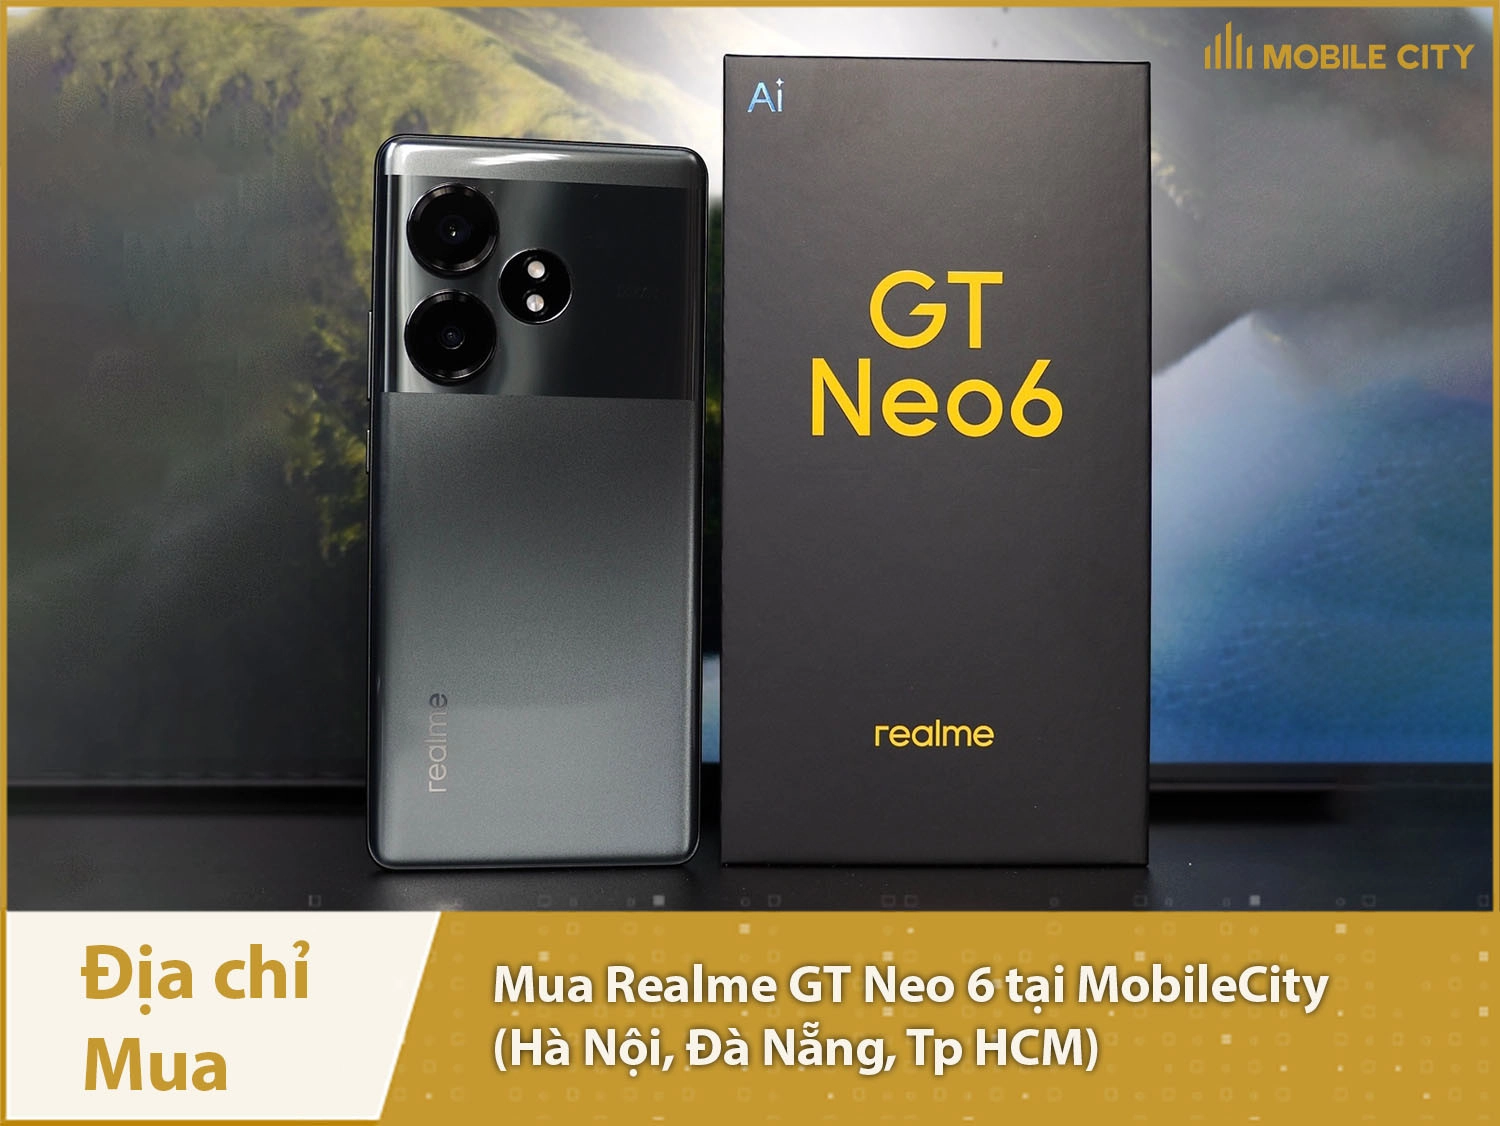 Mua Realme GT Neo 6 tại Hà Nội, Đà Nẵng, Tp HCM